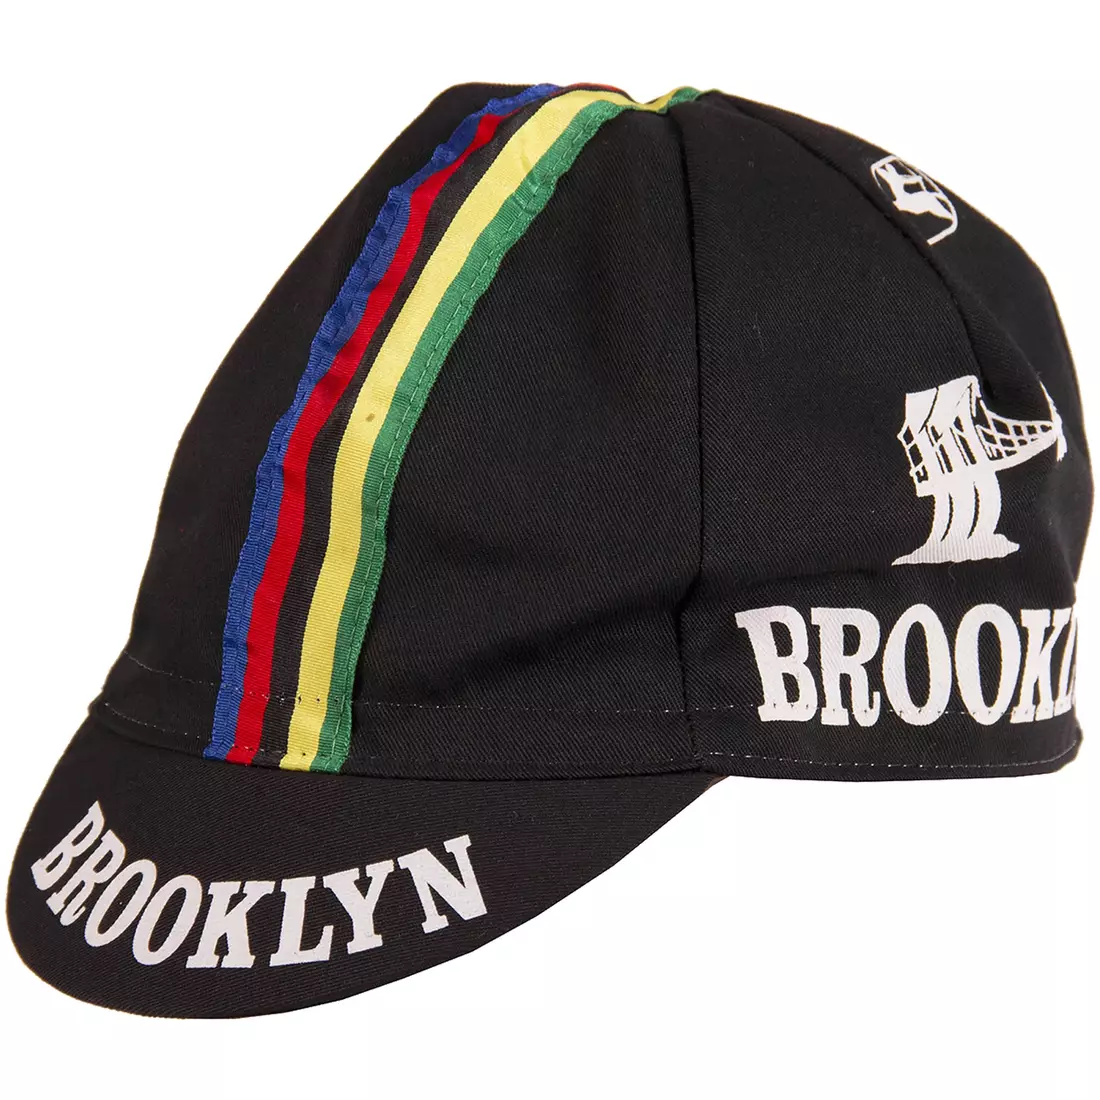 Şapcă de ciclism GIORDANA SS18 - Brooklyn - Negru cu bandă Stripe GI-S6-COCA-BROK-BLCK mărime unică